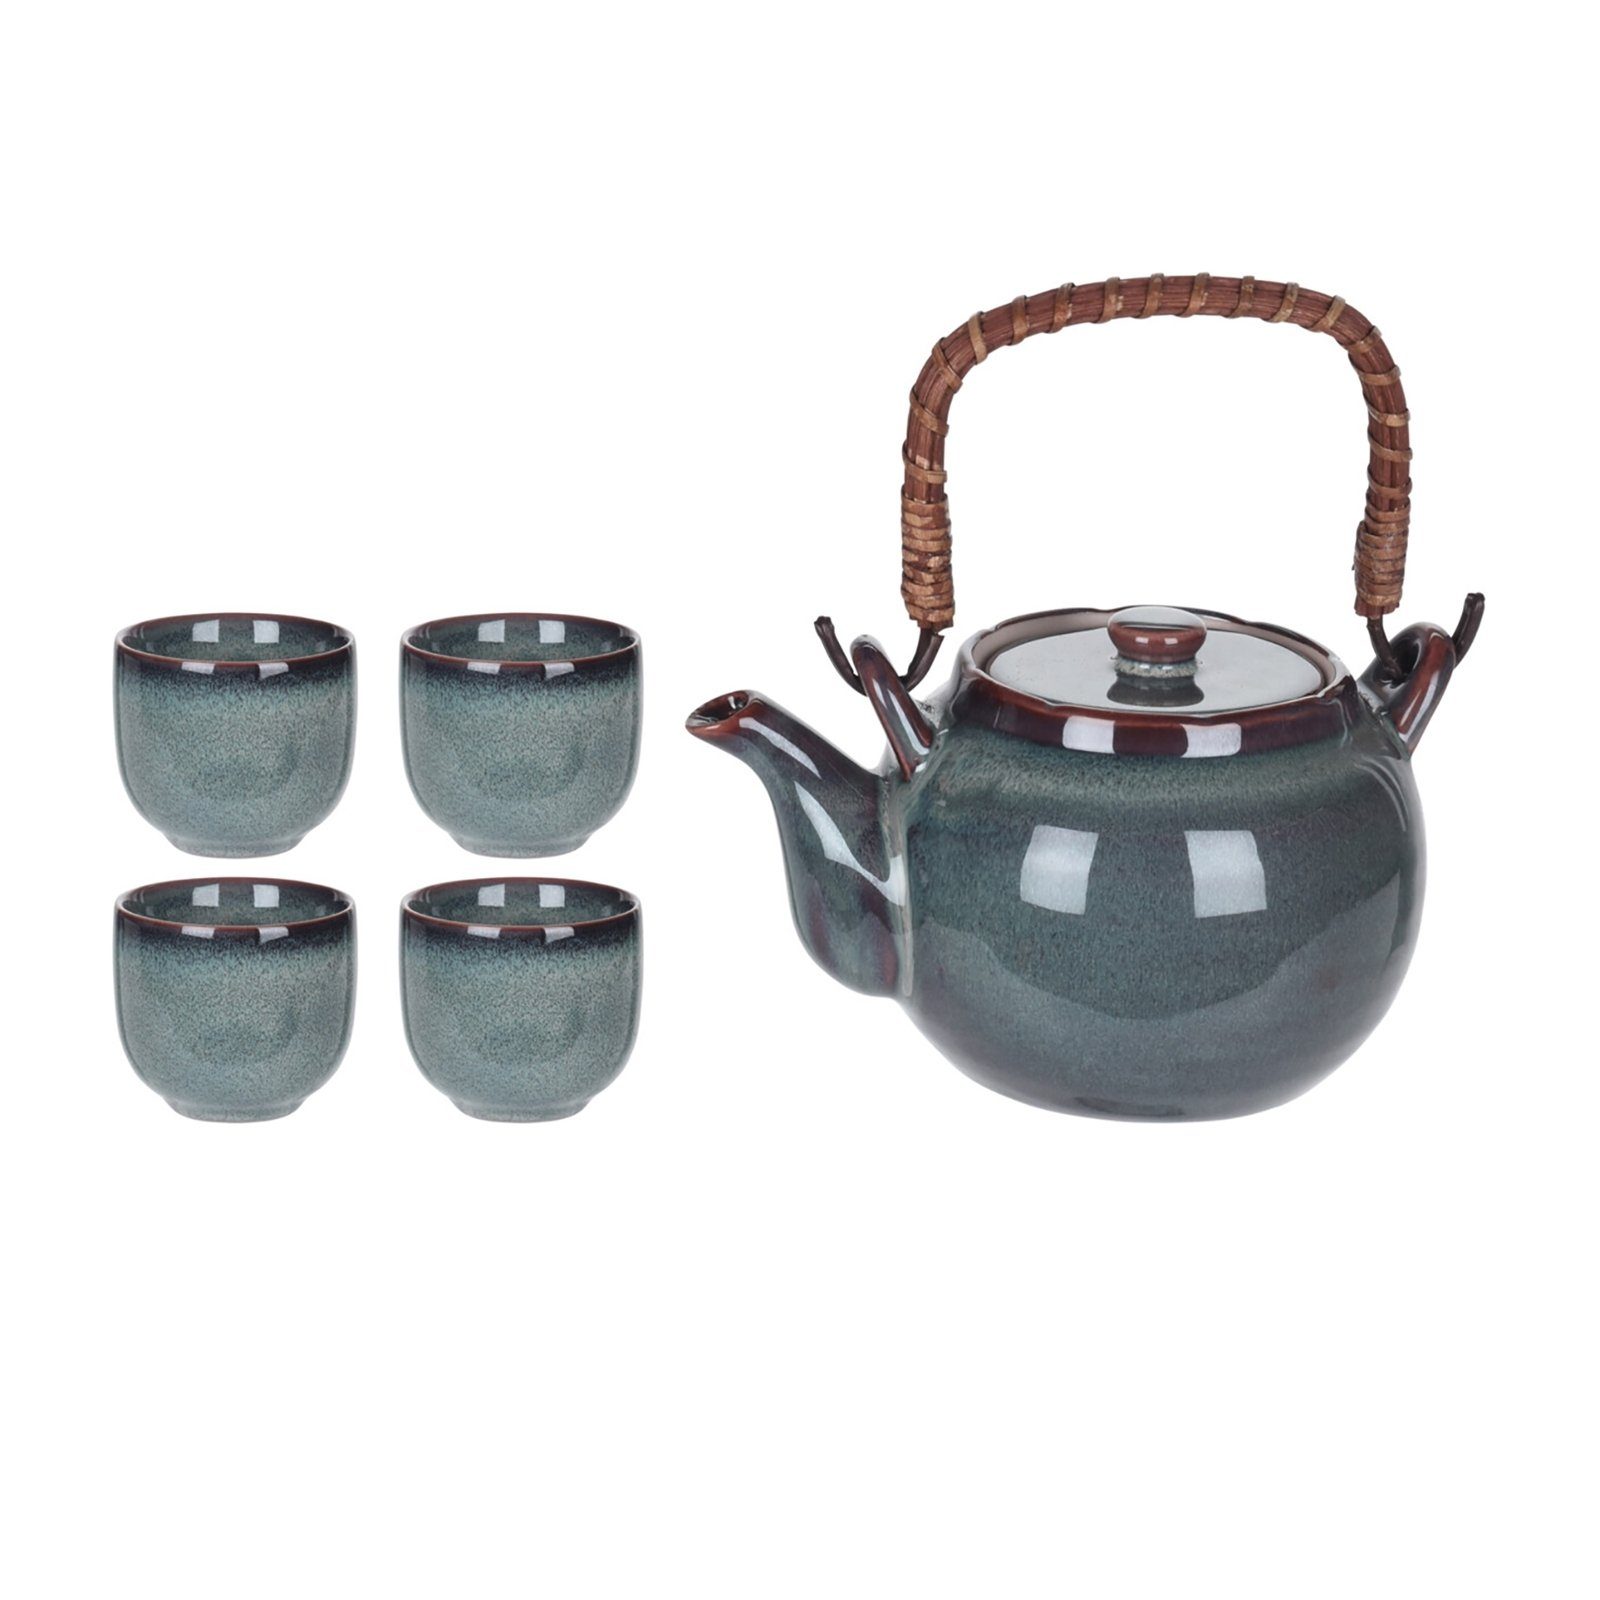 mit Teekanne 4 Neuetischkultur Becher Teekanne Keramik